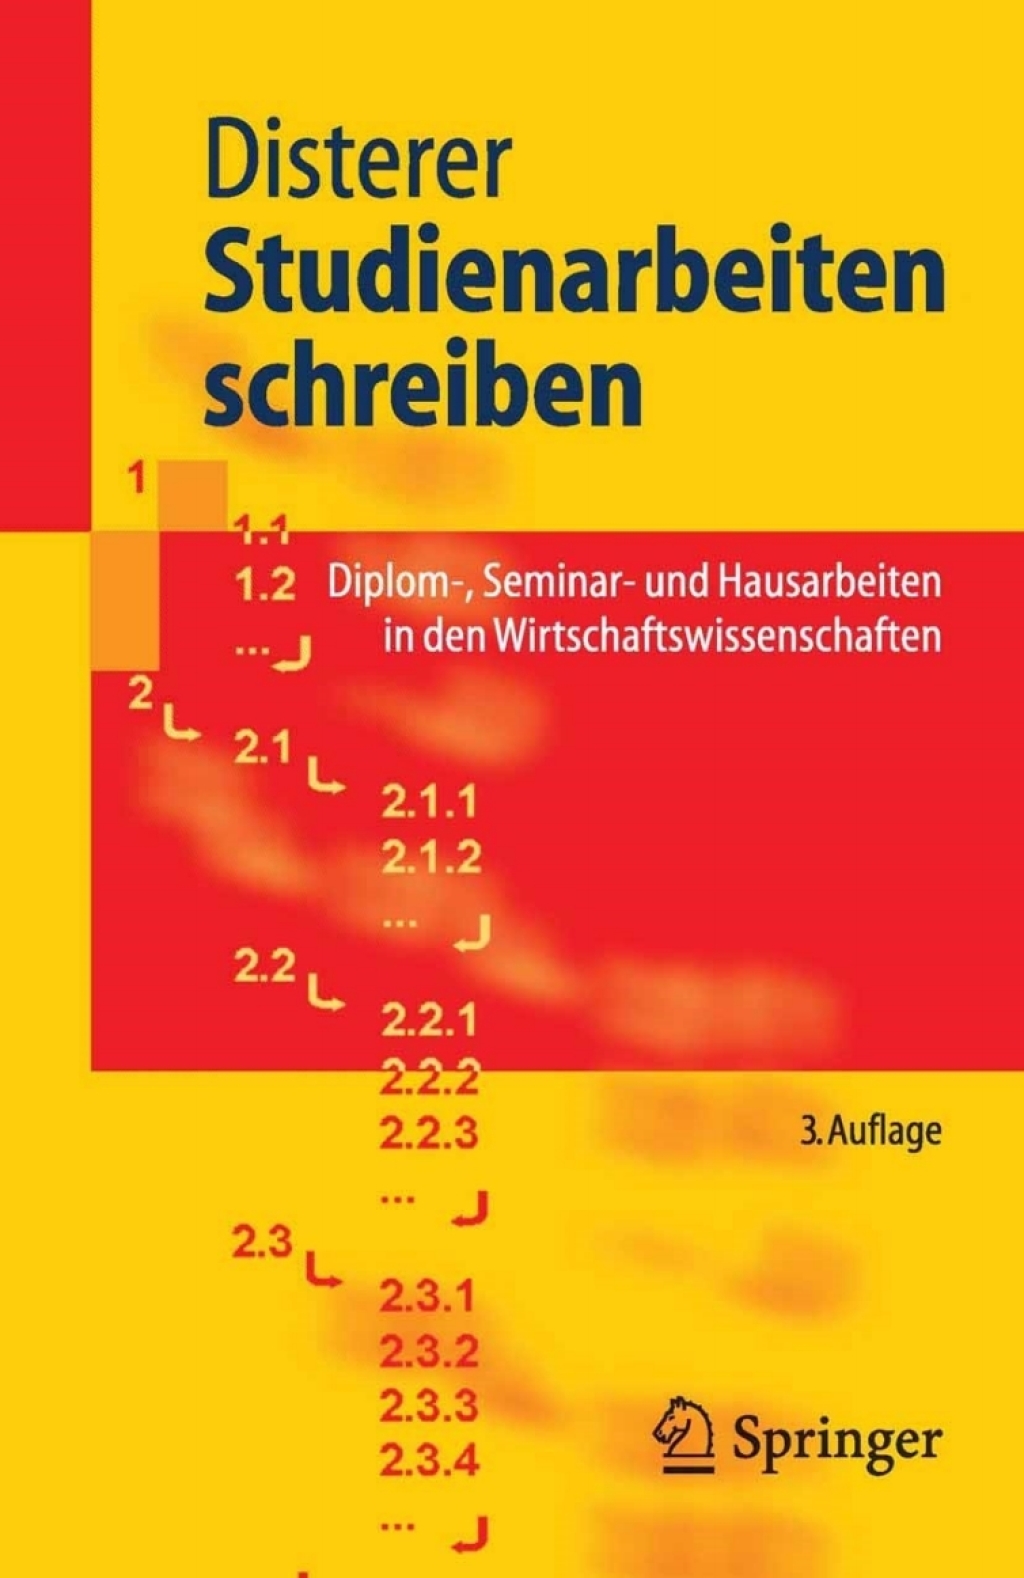 Studienarbeiten schreiben - 3rd Edition (eBook)